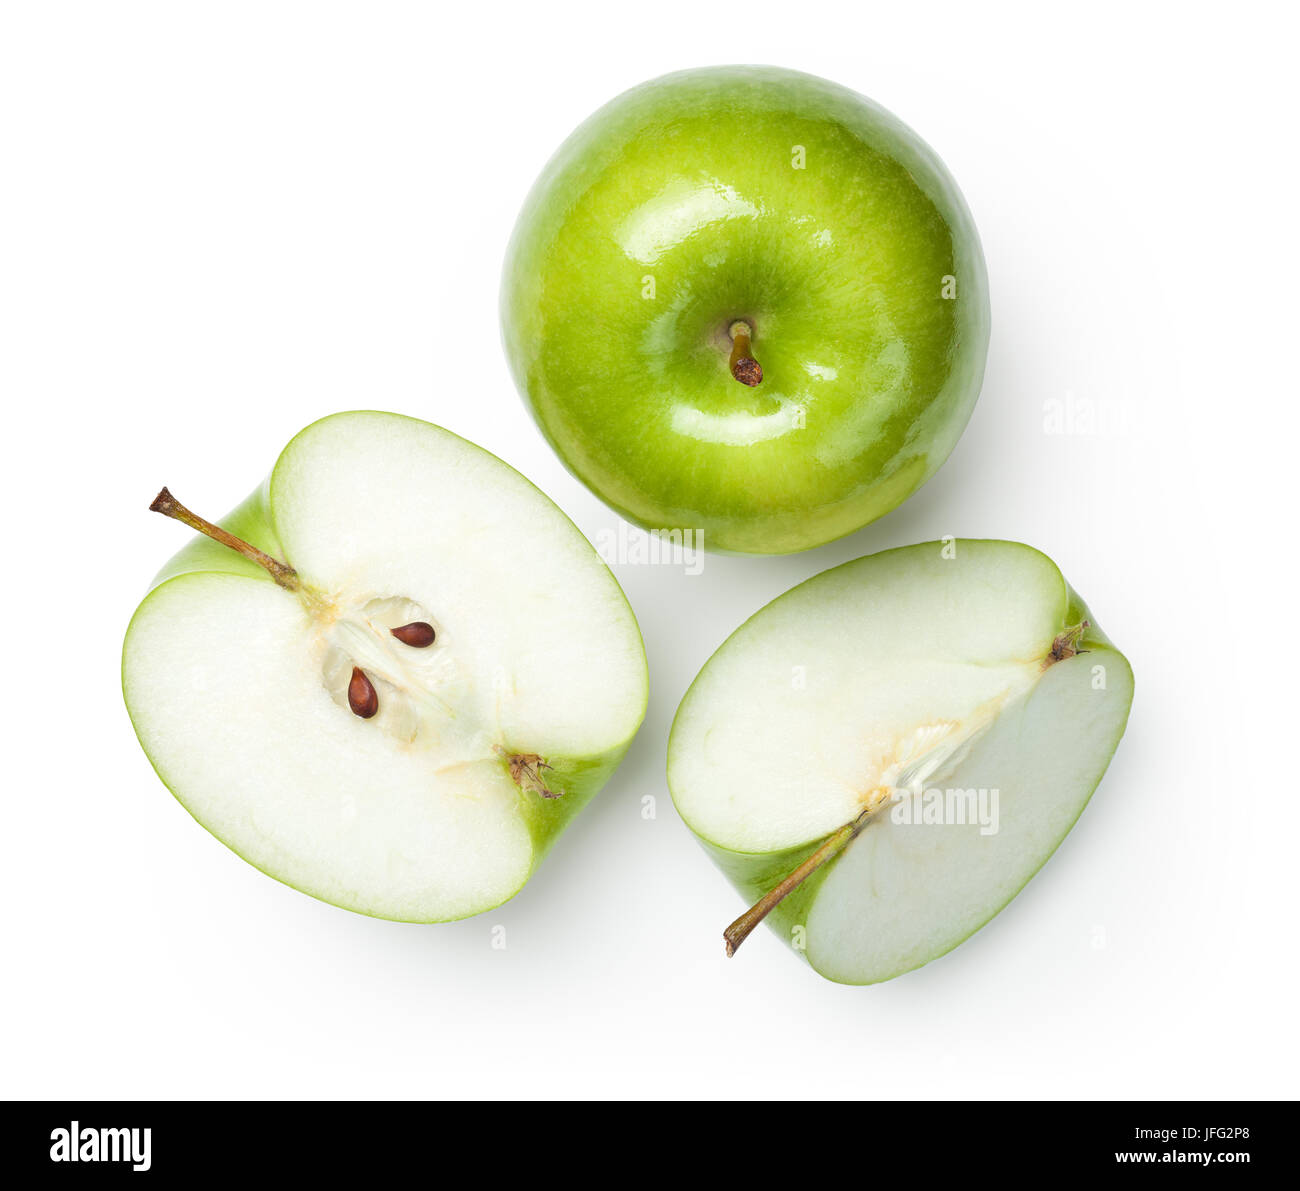 Granny Smith Apples on White Stock Photo